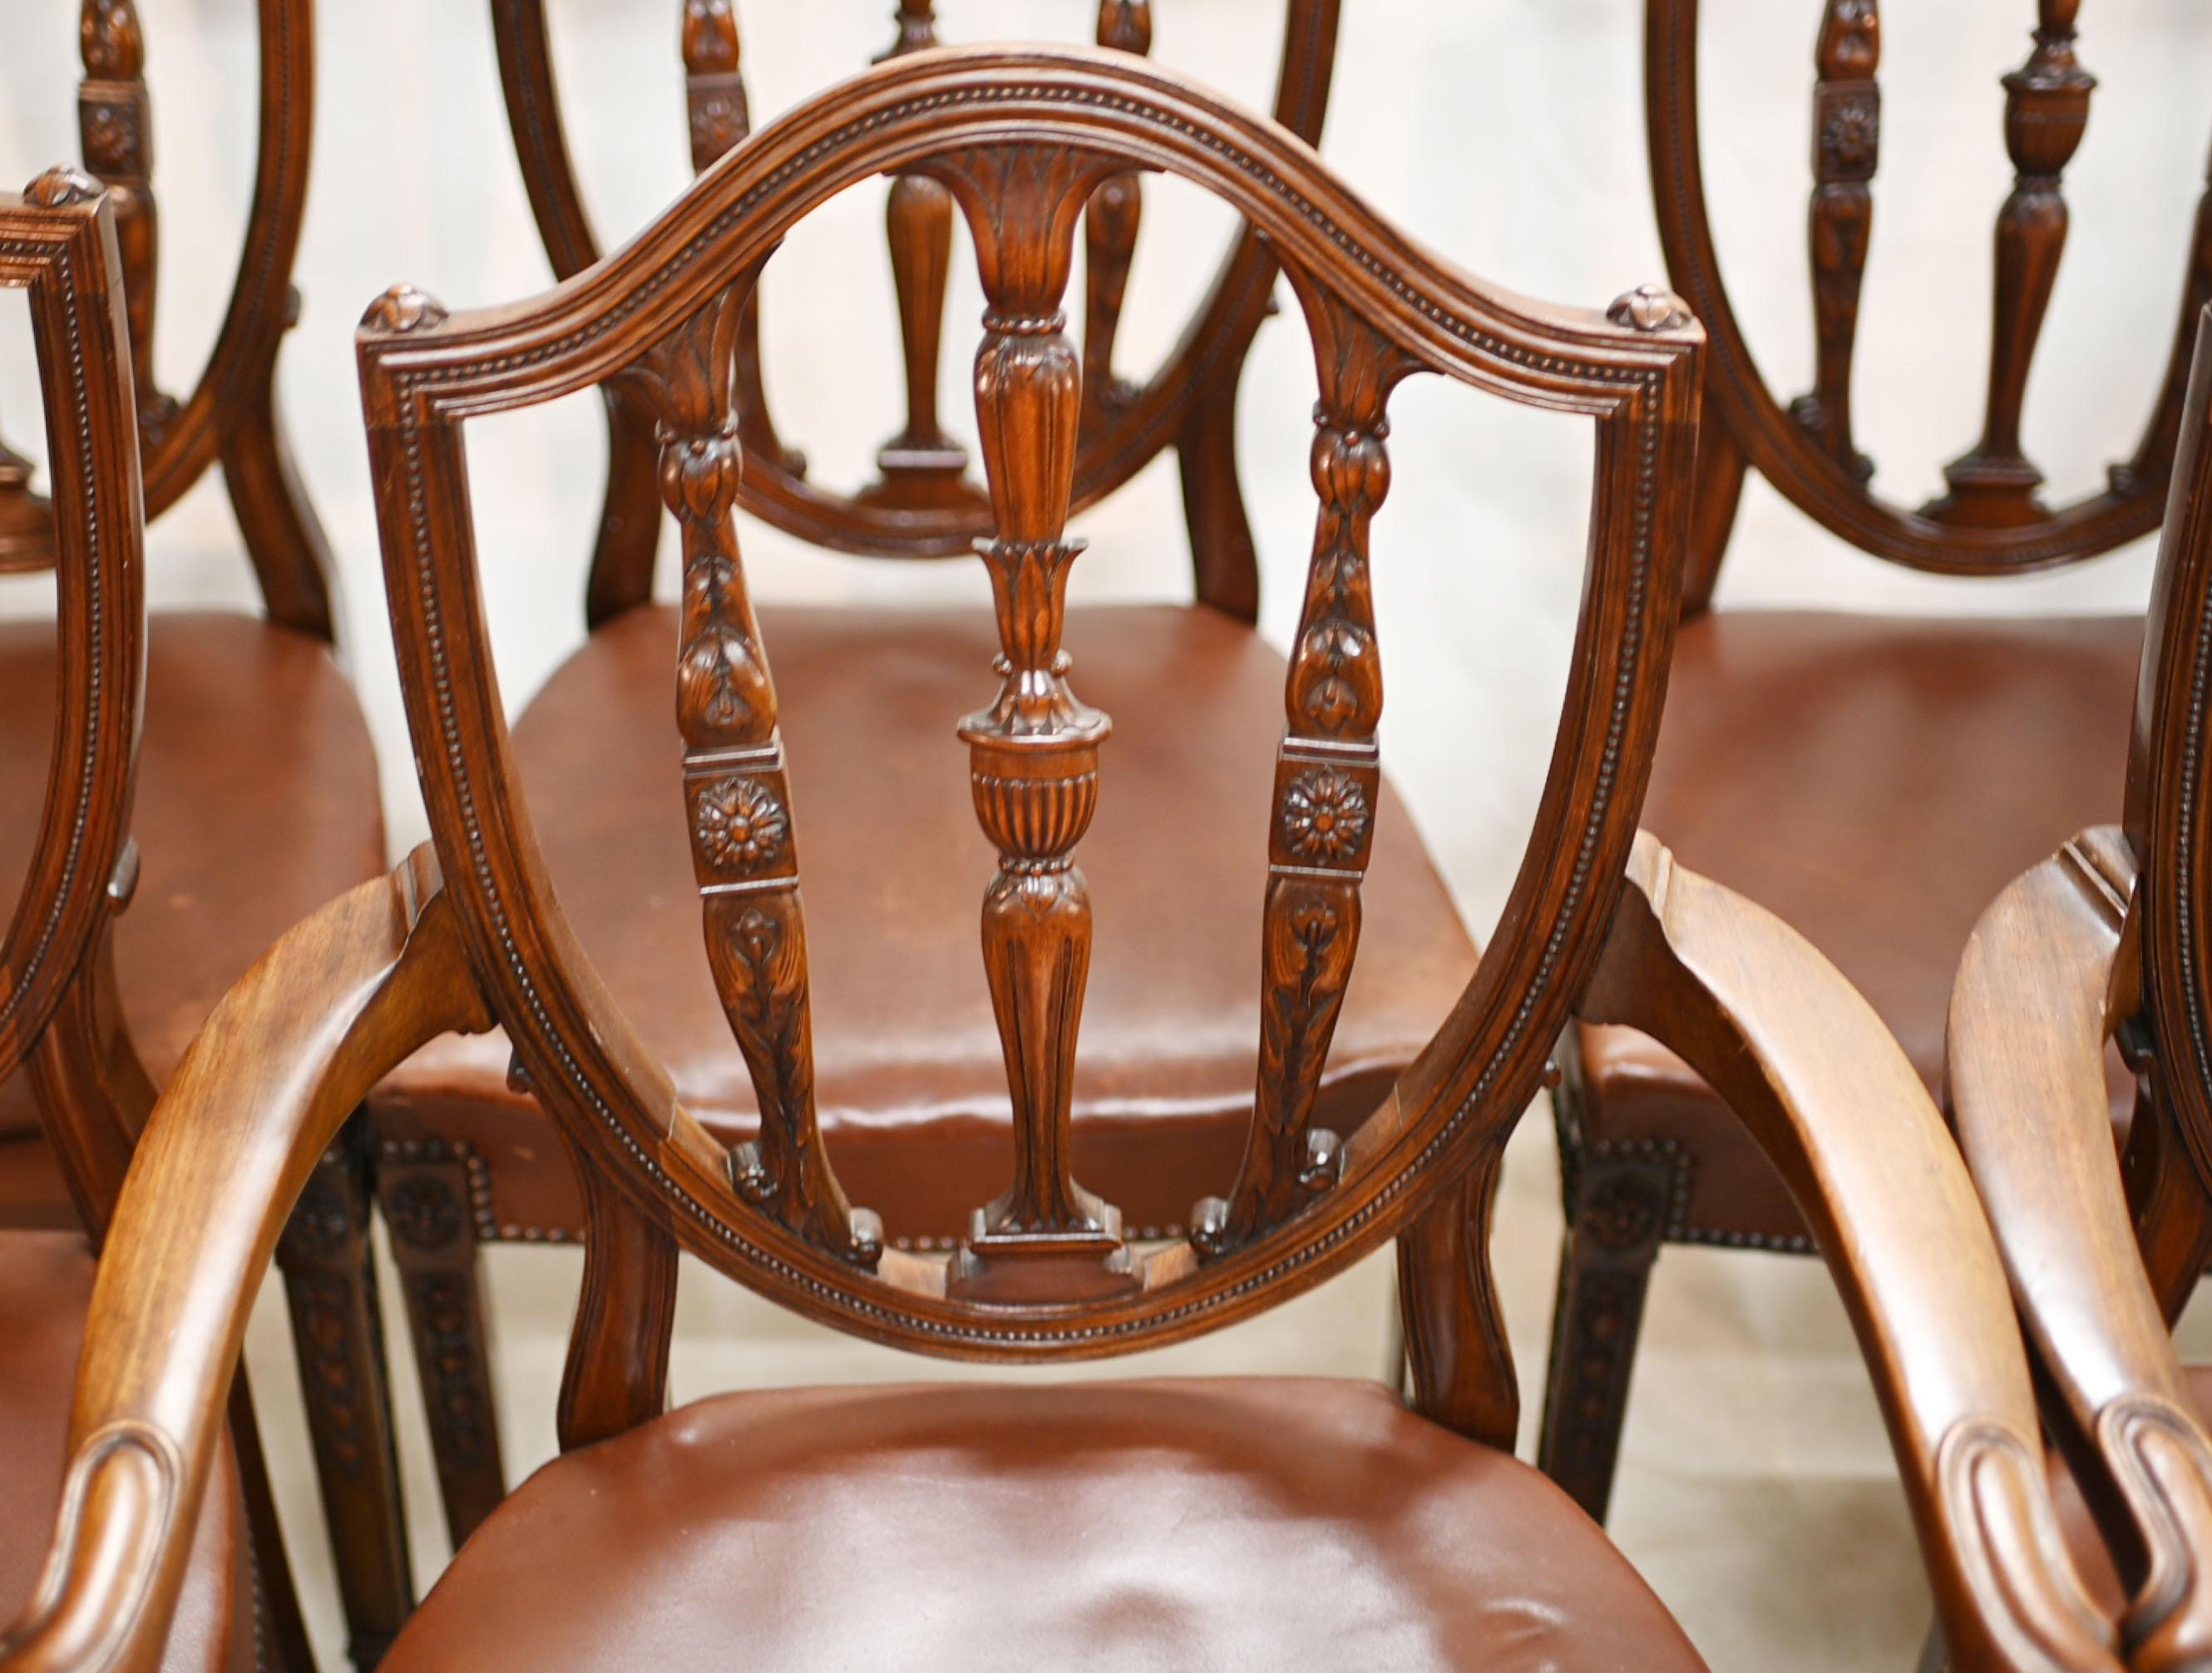 Ensemble élégant et raffiné de 8 chaises de salle à manger d'après Eleg...
Dossier classique sculpté à la main avec des motifs d'urnes et de rosettes
Ensemble de 8 chaises - dont deux fauteuils
Nous datons ces chaises d'environ 1880.
Offert en